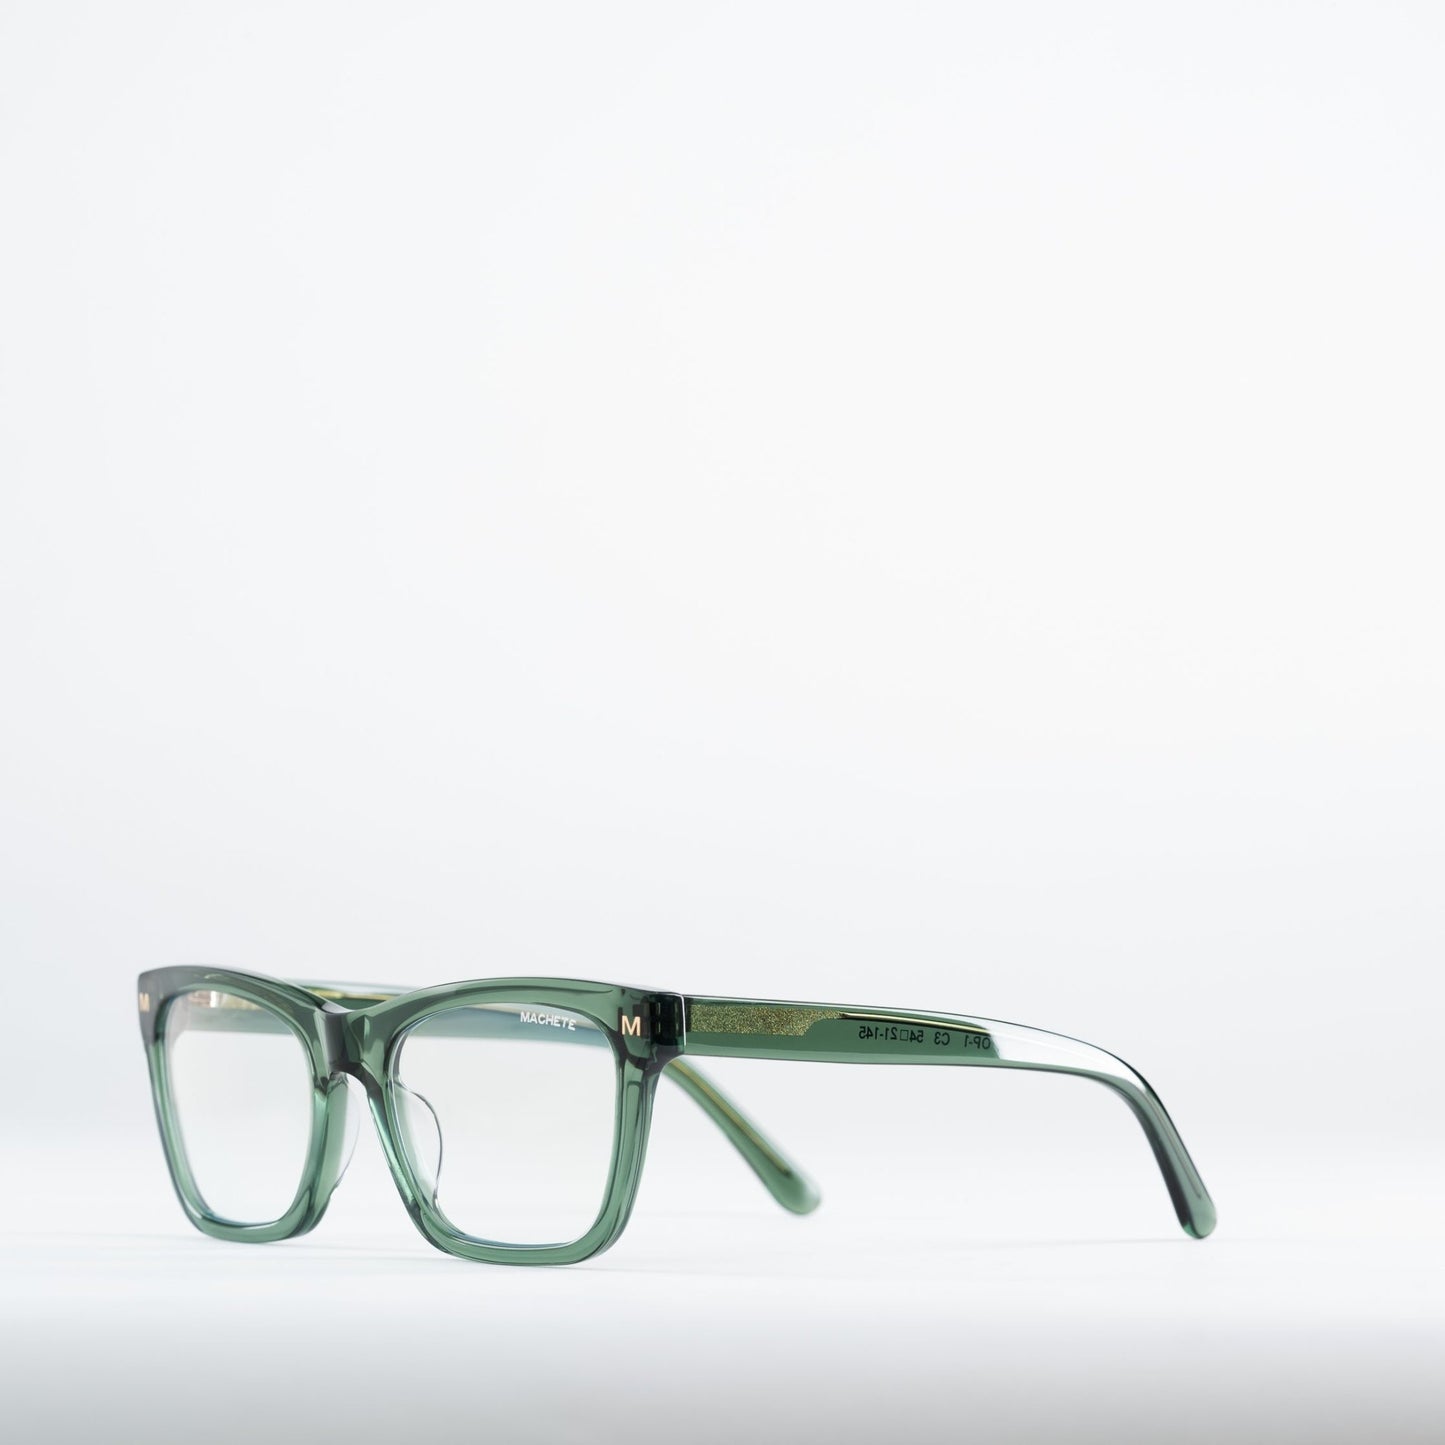 MACHETE Glasses in Printemps